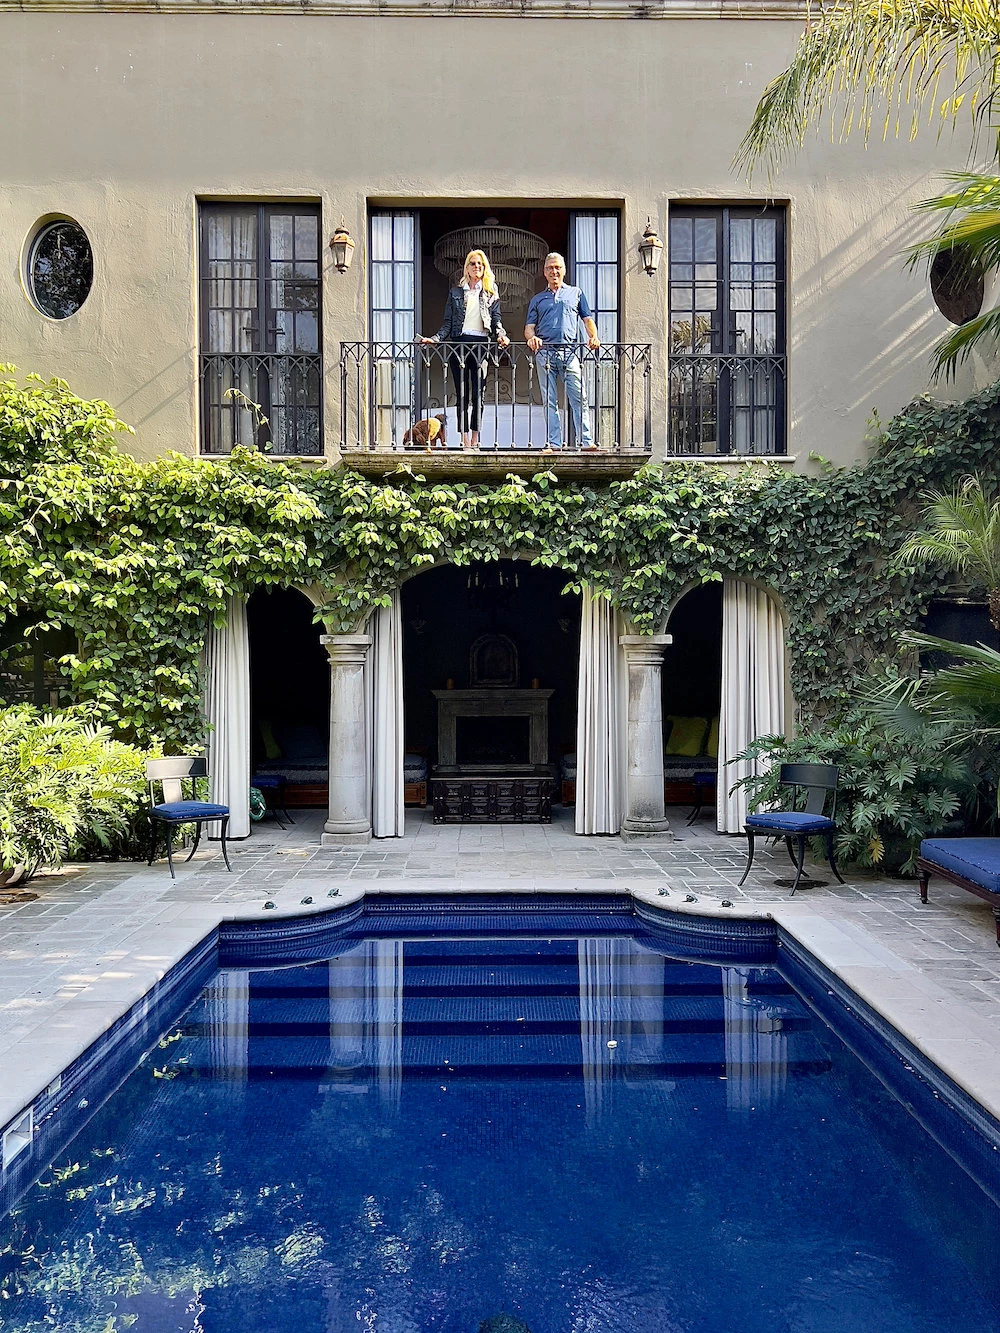 Jeffrey Wiseman et Susanna Salk à Casa Acanto - Pool House